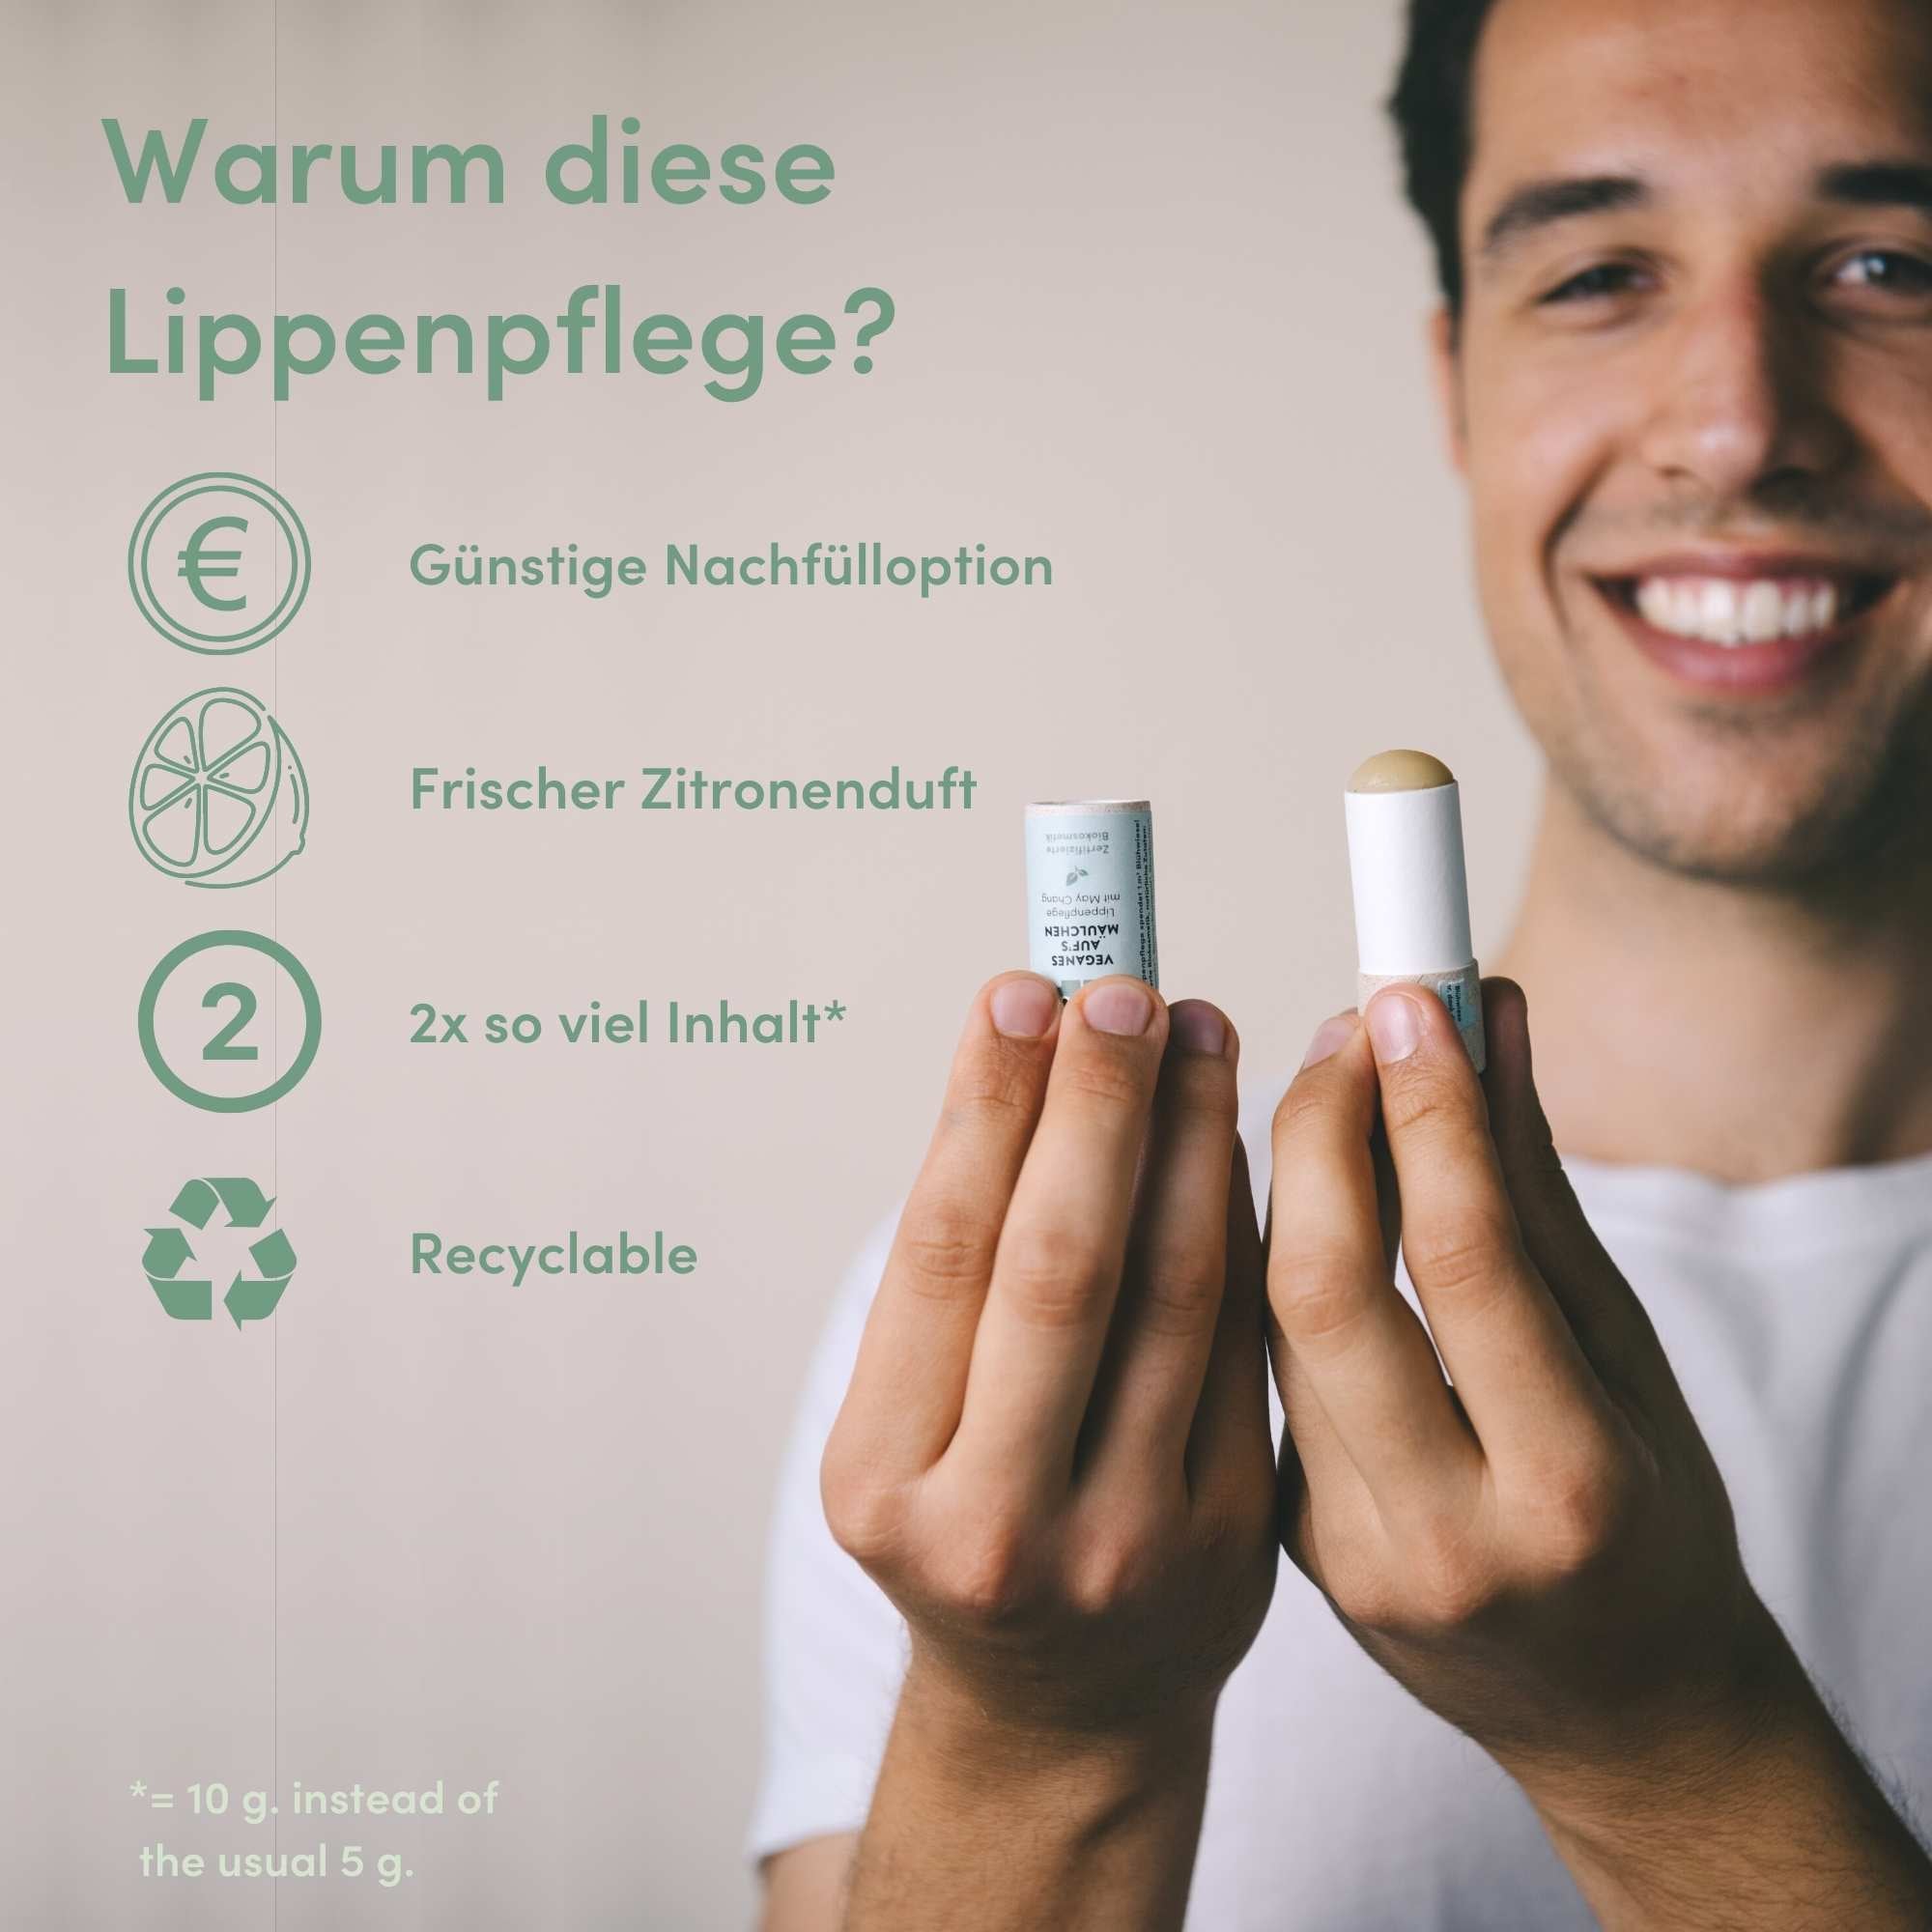 Vegane Lippenpflege mit Sheabutter und Litsea, bio & plastikfrei - 10g